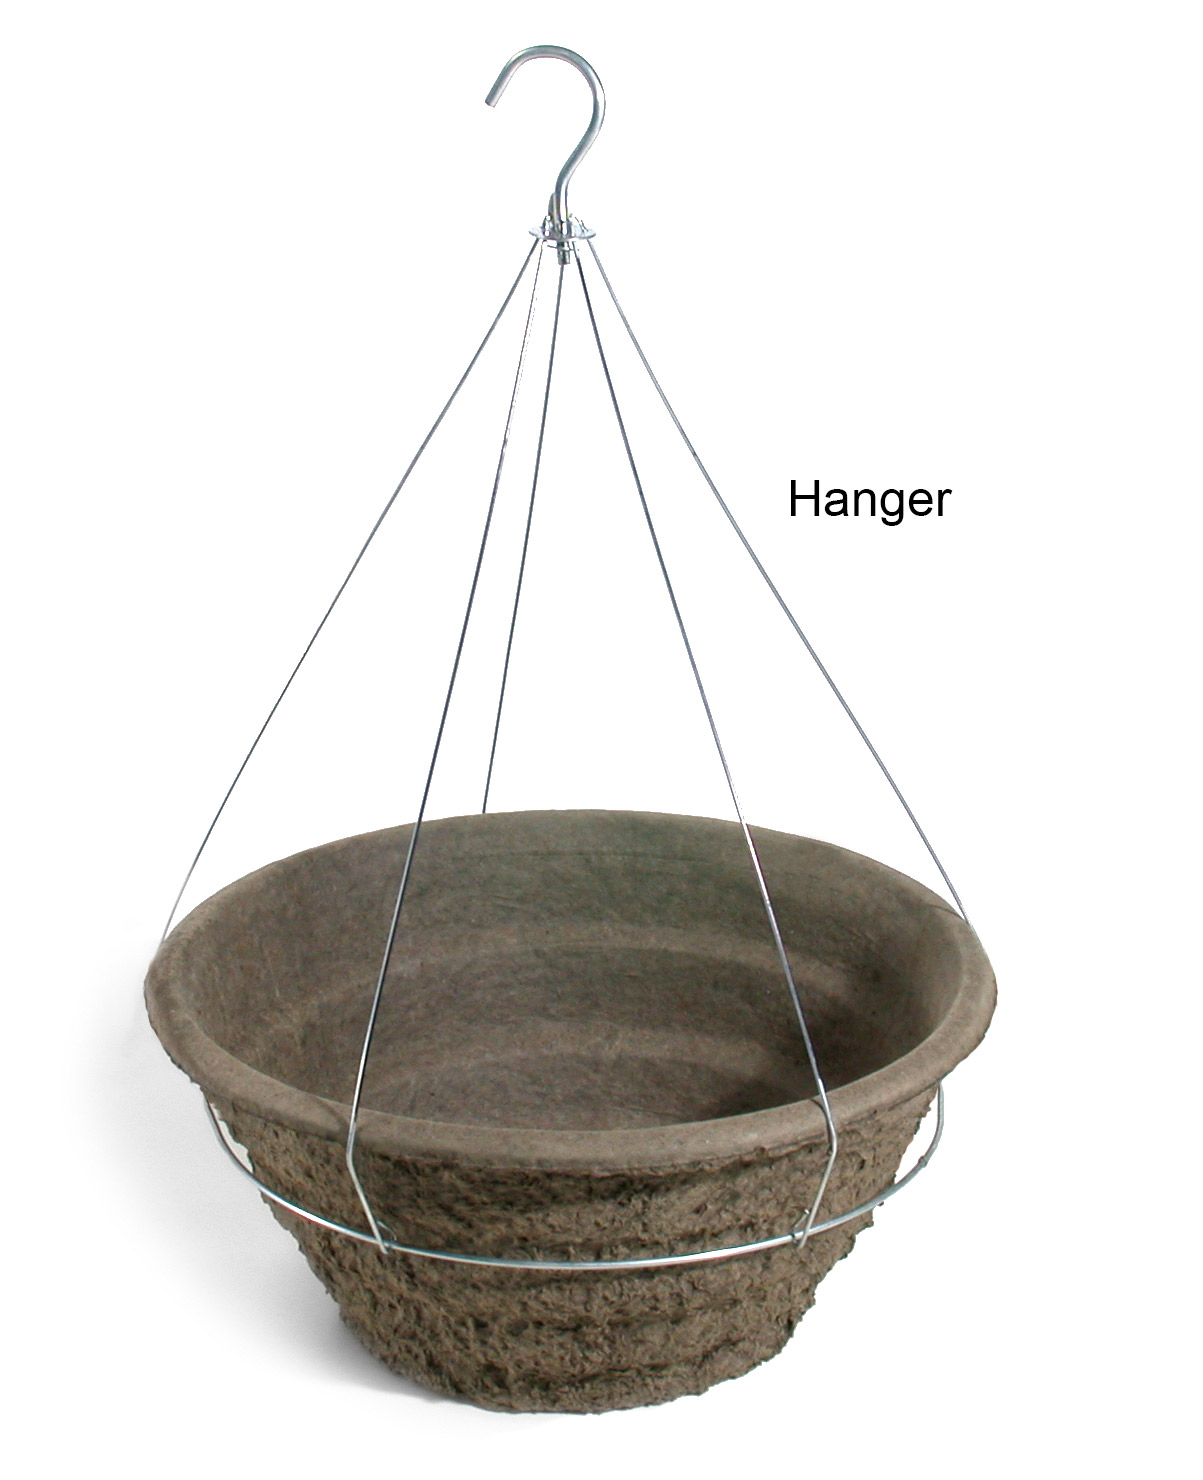 18 Garden Basket Hanger 20/case - Hangers